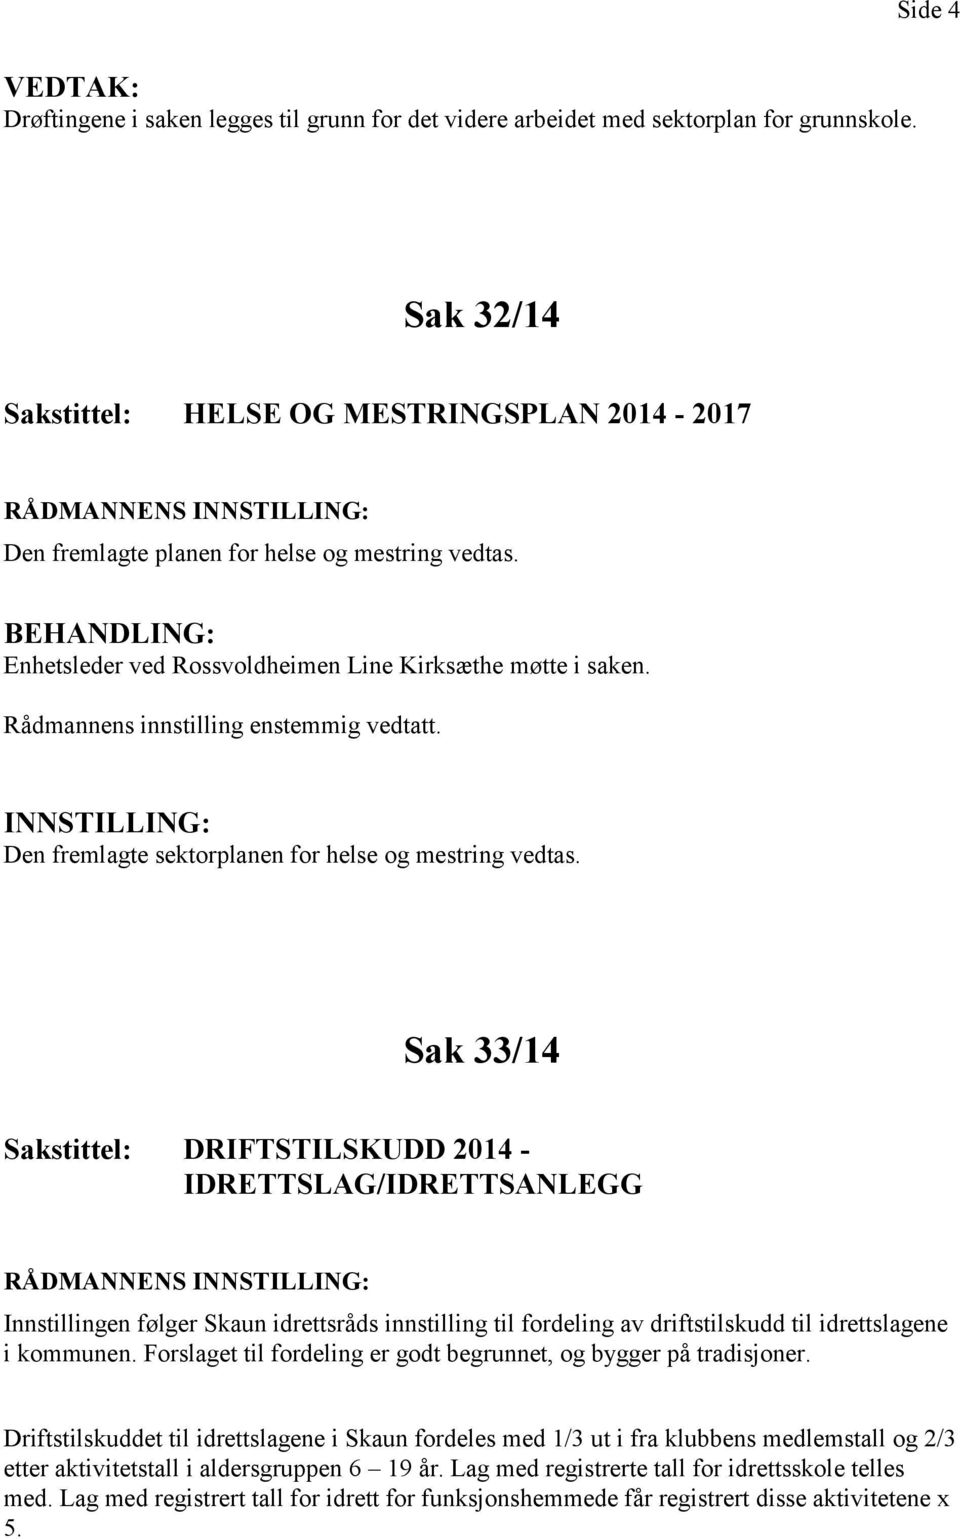 Sak 33/14 DRIFTSTILSKUDD 2014 - IDRETTSLAG/IDRETTSANLEGG Innstillingen følger Skaun idrettsråds innstilling til fordeling av driftstilskudd til idrettslagene i kommunen.